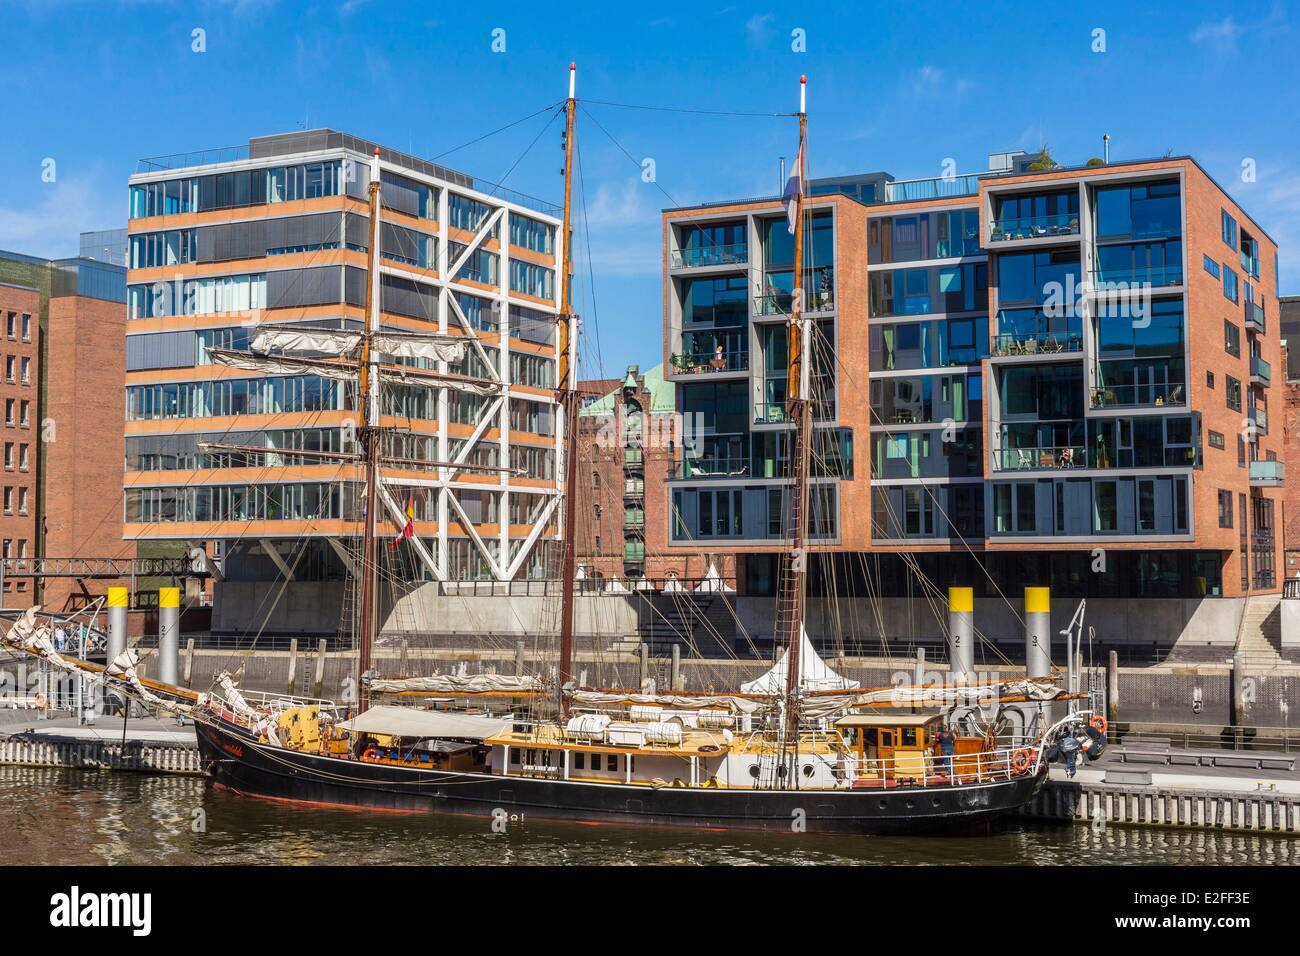 Alemania HafenCity de Hamburgo que desarrolla el proyecto más importante de planificación urbana europea con la rehabilitación de 155 Foto de stock